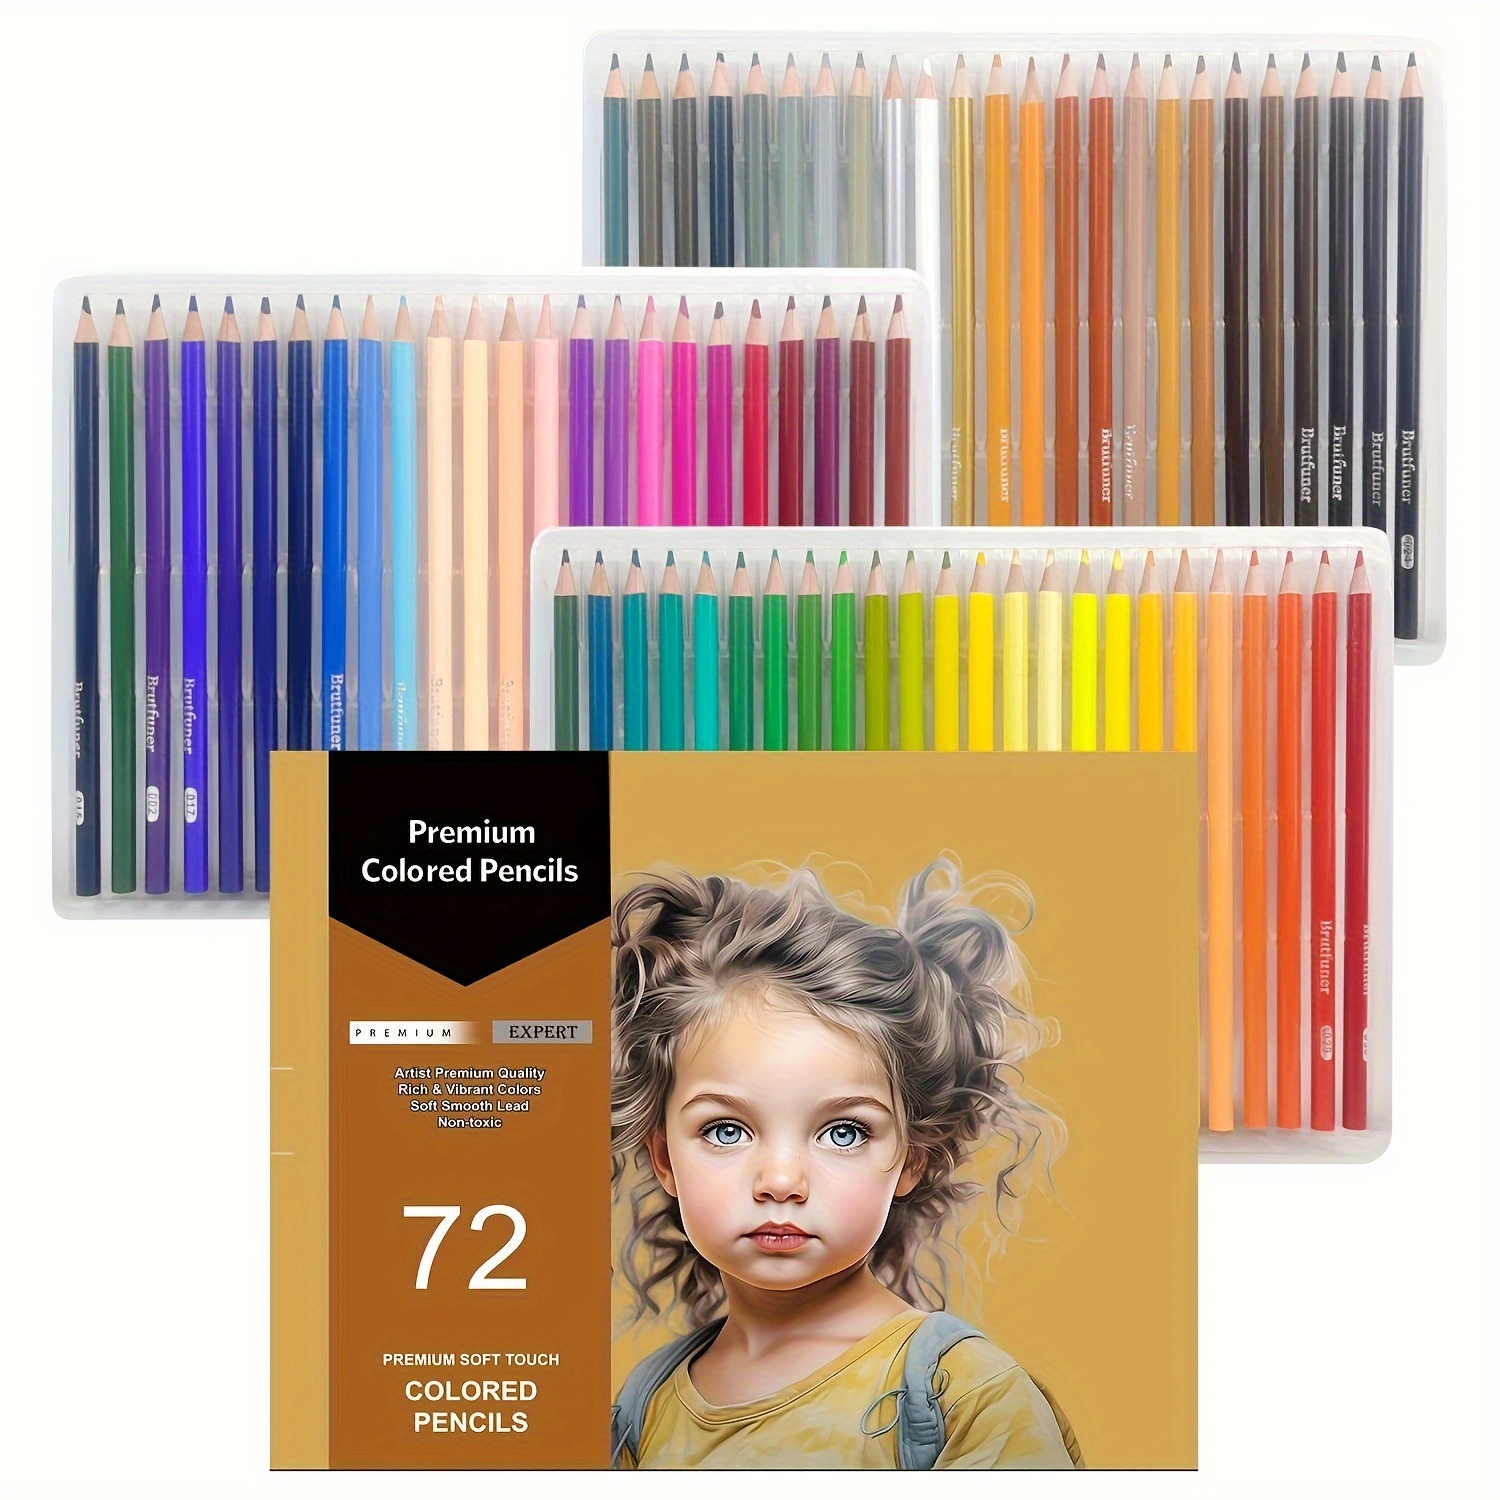 Crayon de couleur,crayons de couleur Macaron 50,crayons de couleur Pastel  professionnels pour dessin,ensemble - 50 Pastel Colors